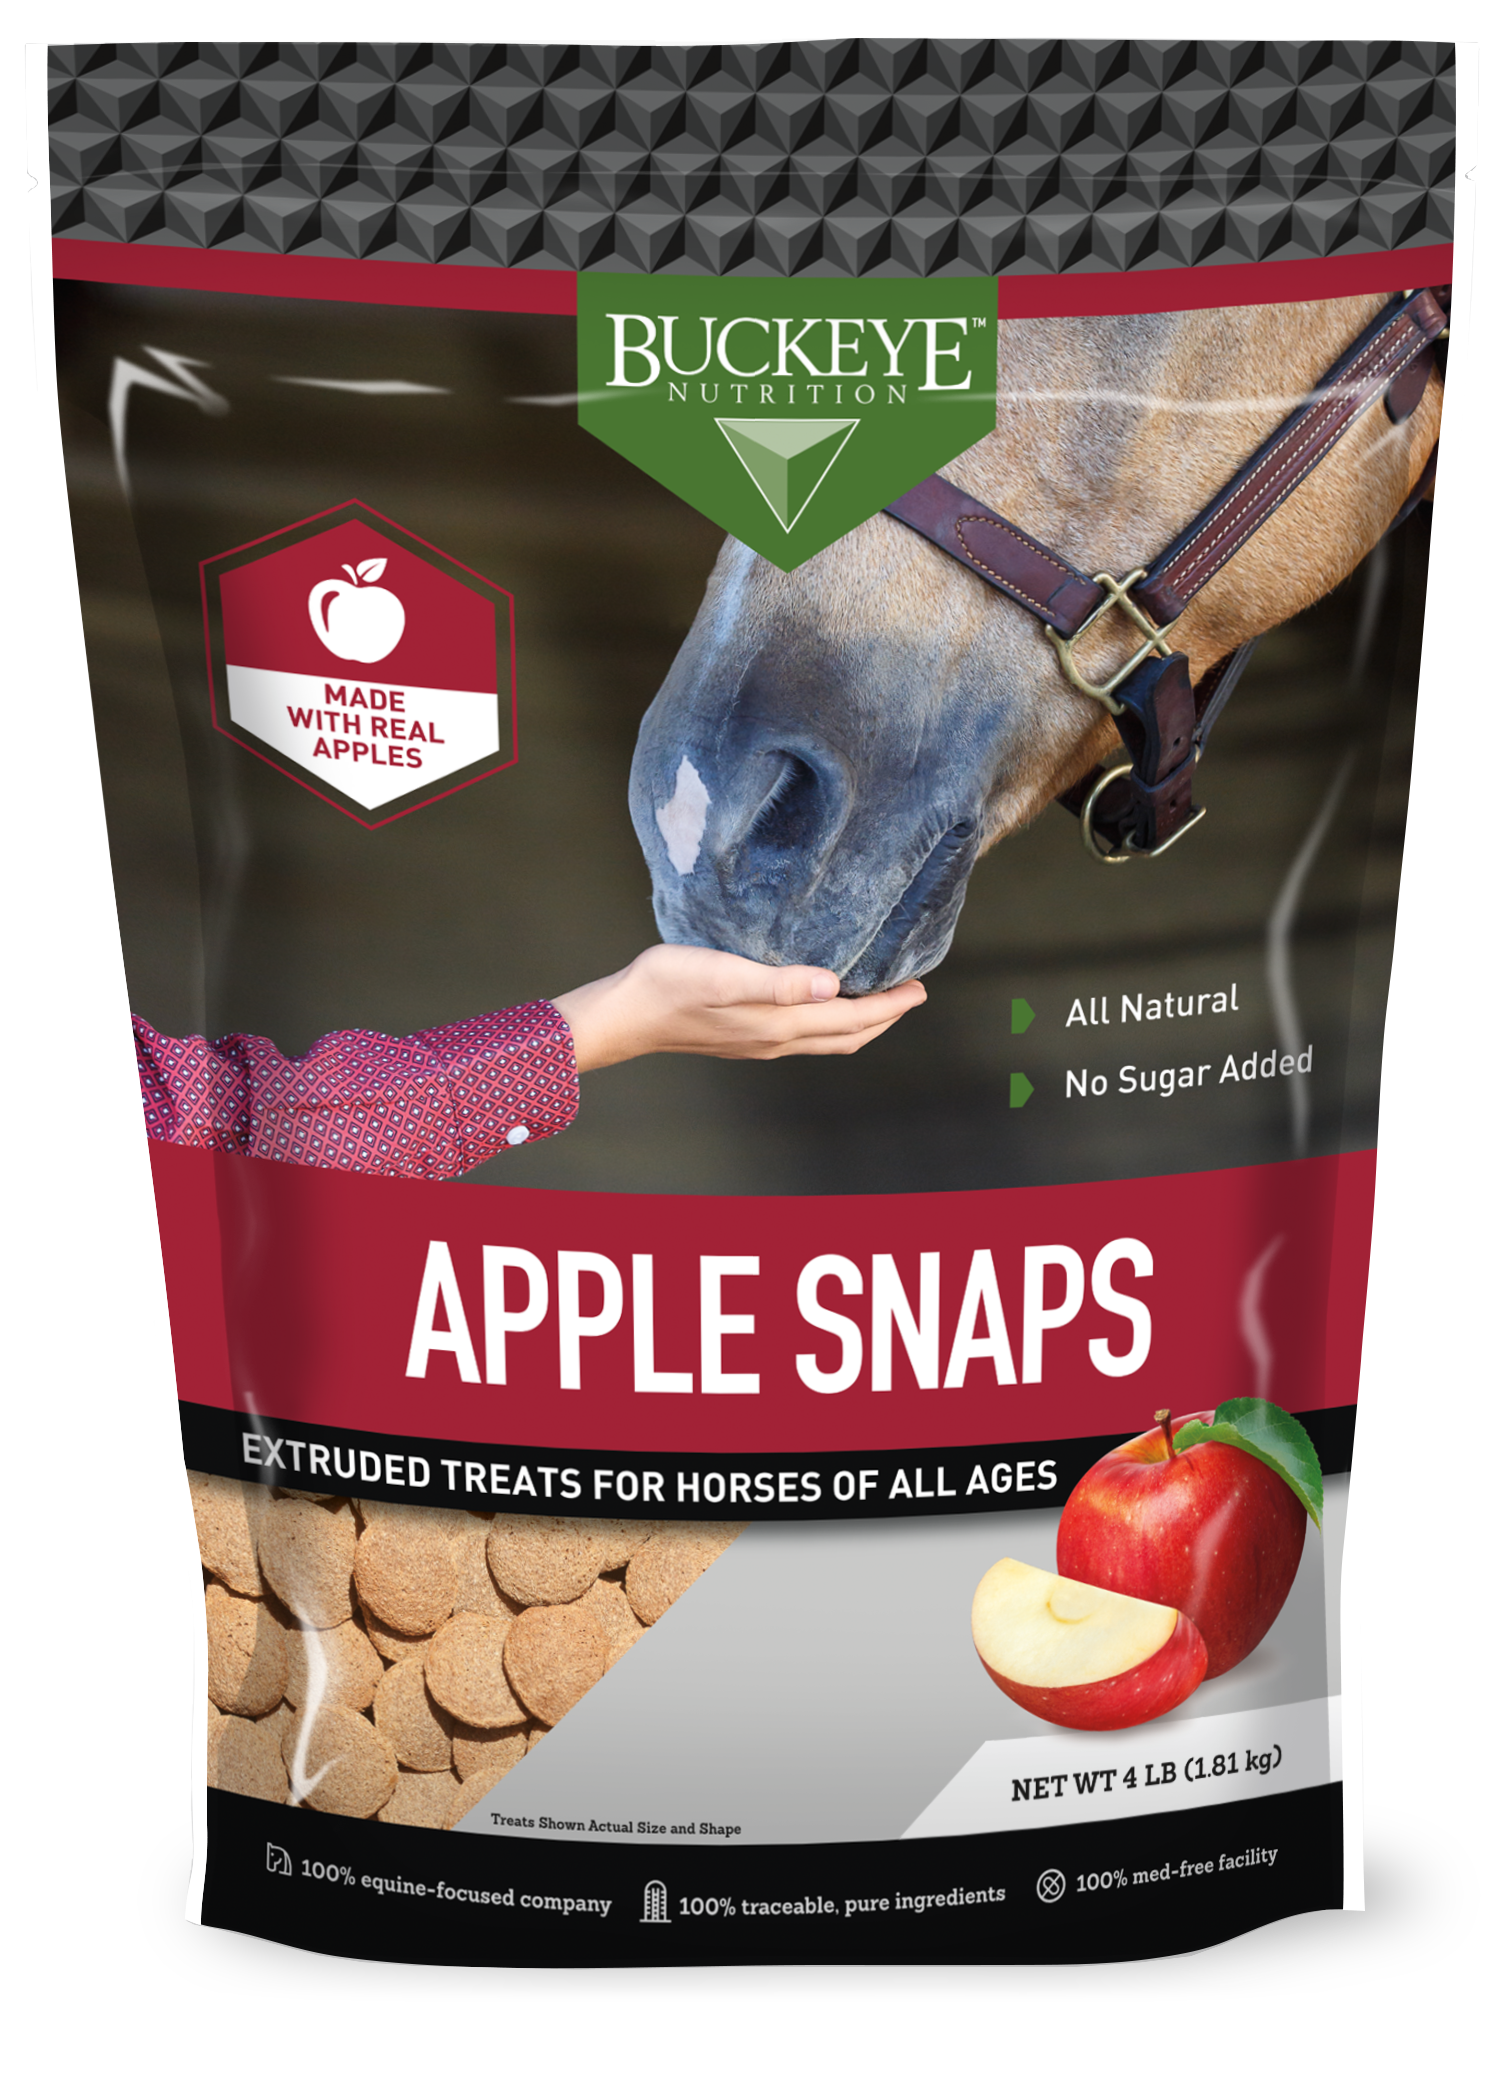 All Natural No Sugar Added Apple Snap Treats image 1++